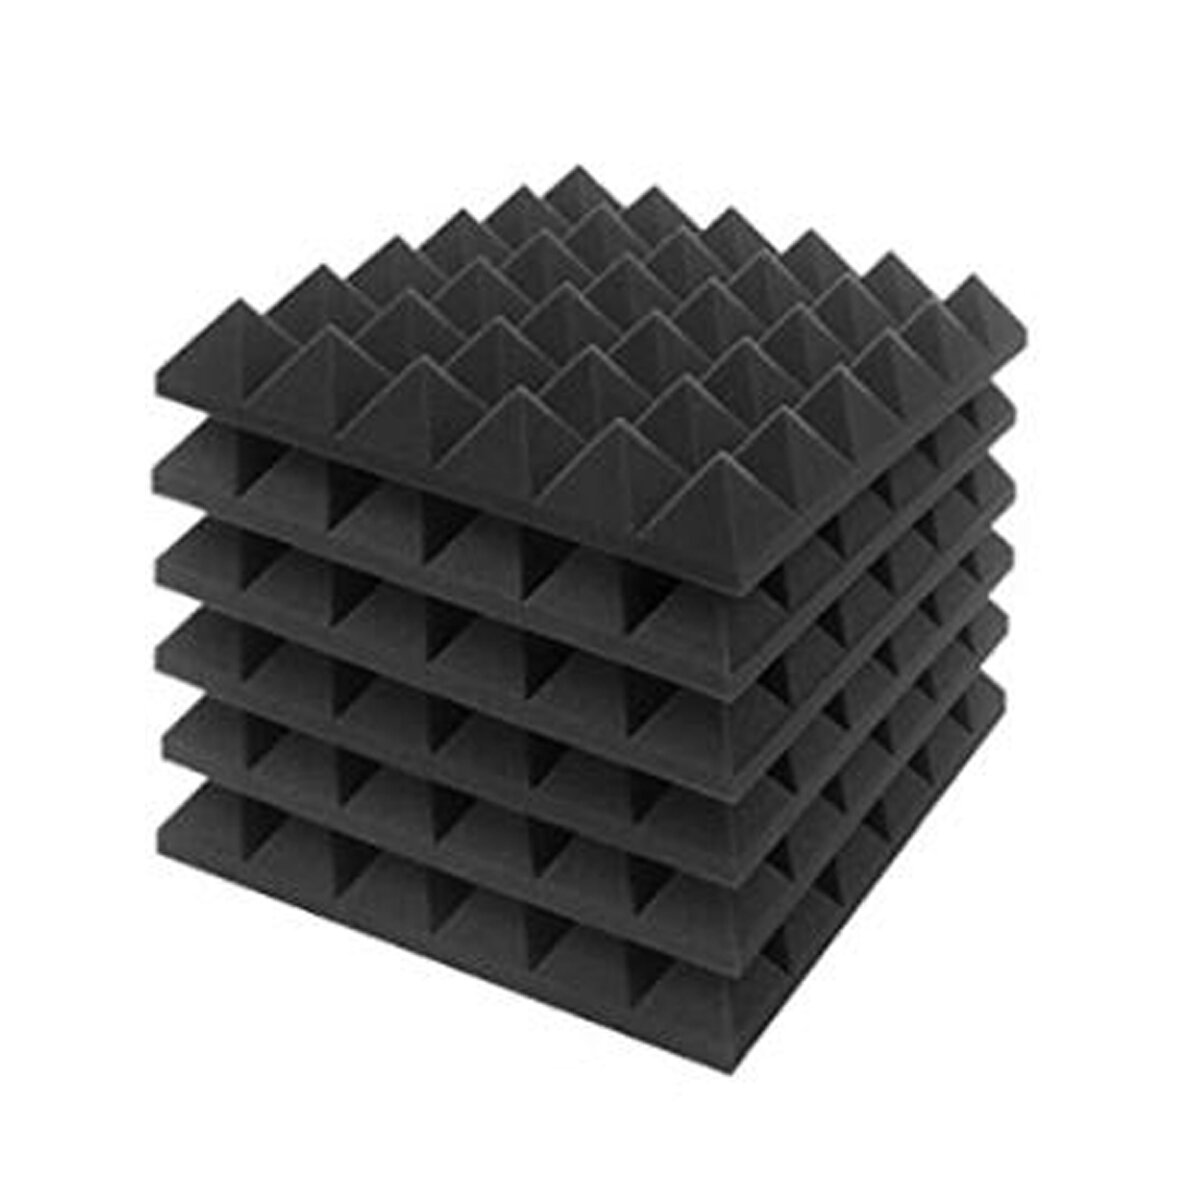 6Pcs Acoustic Foam Studio Soundproofing Foam Wedges Wall Tiles 12 x 12 x 2inch